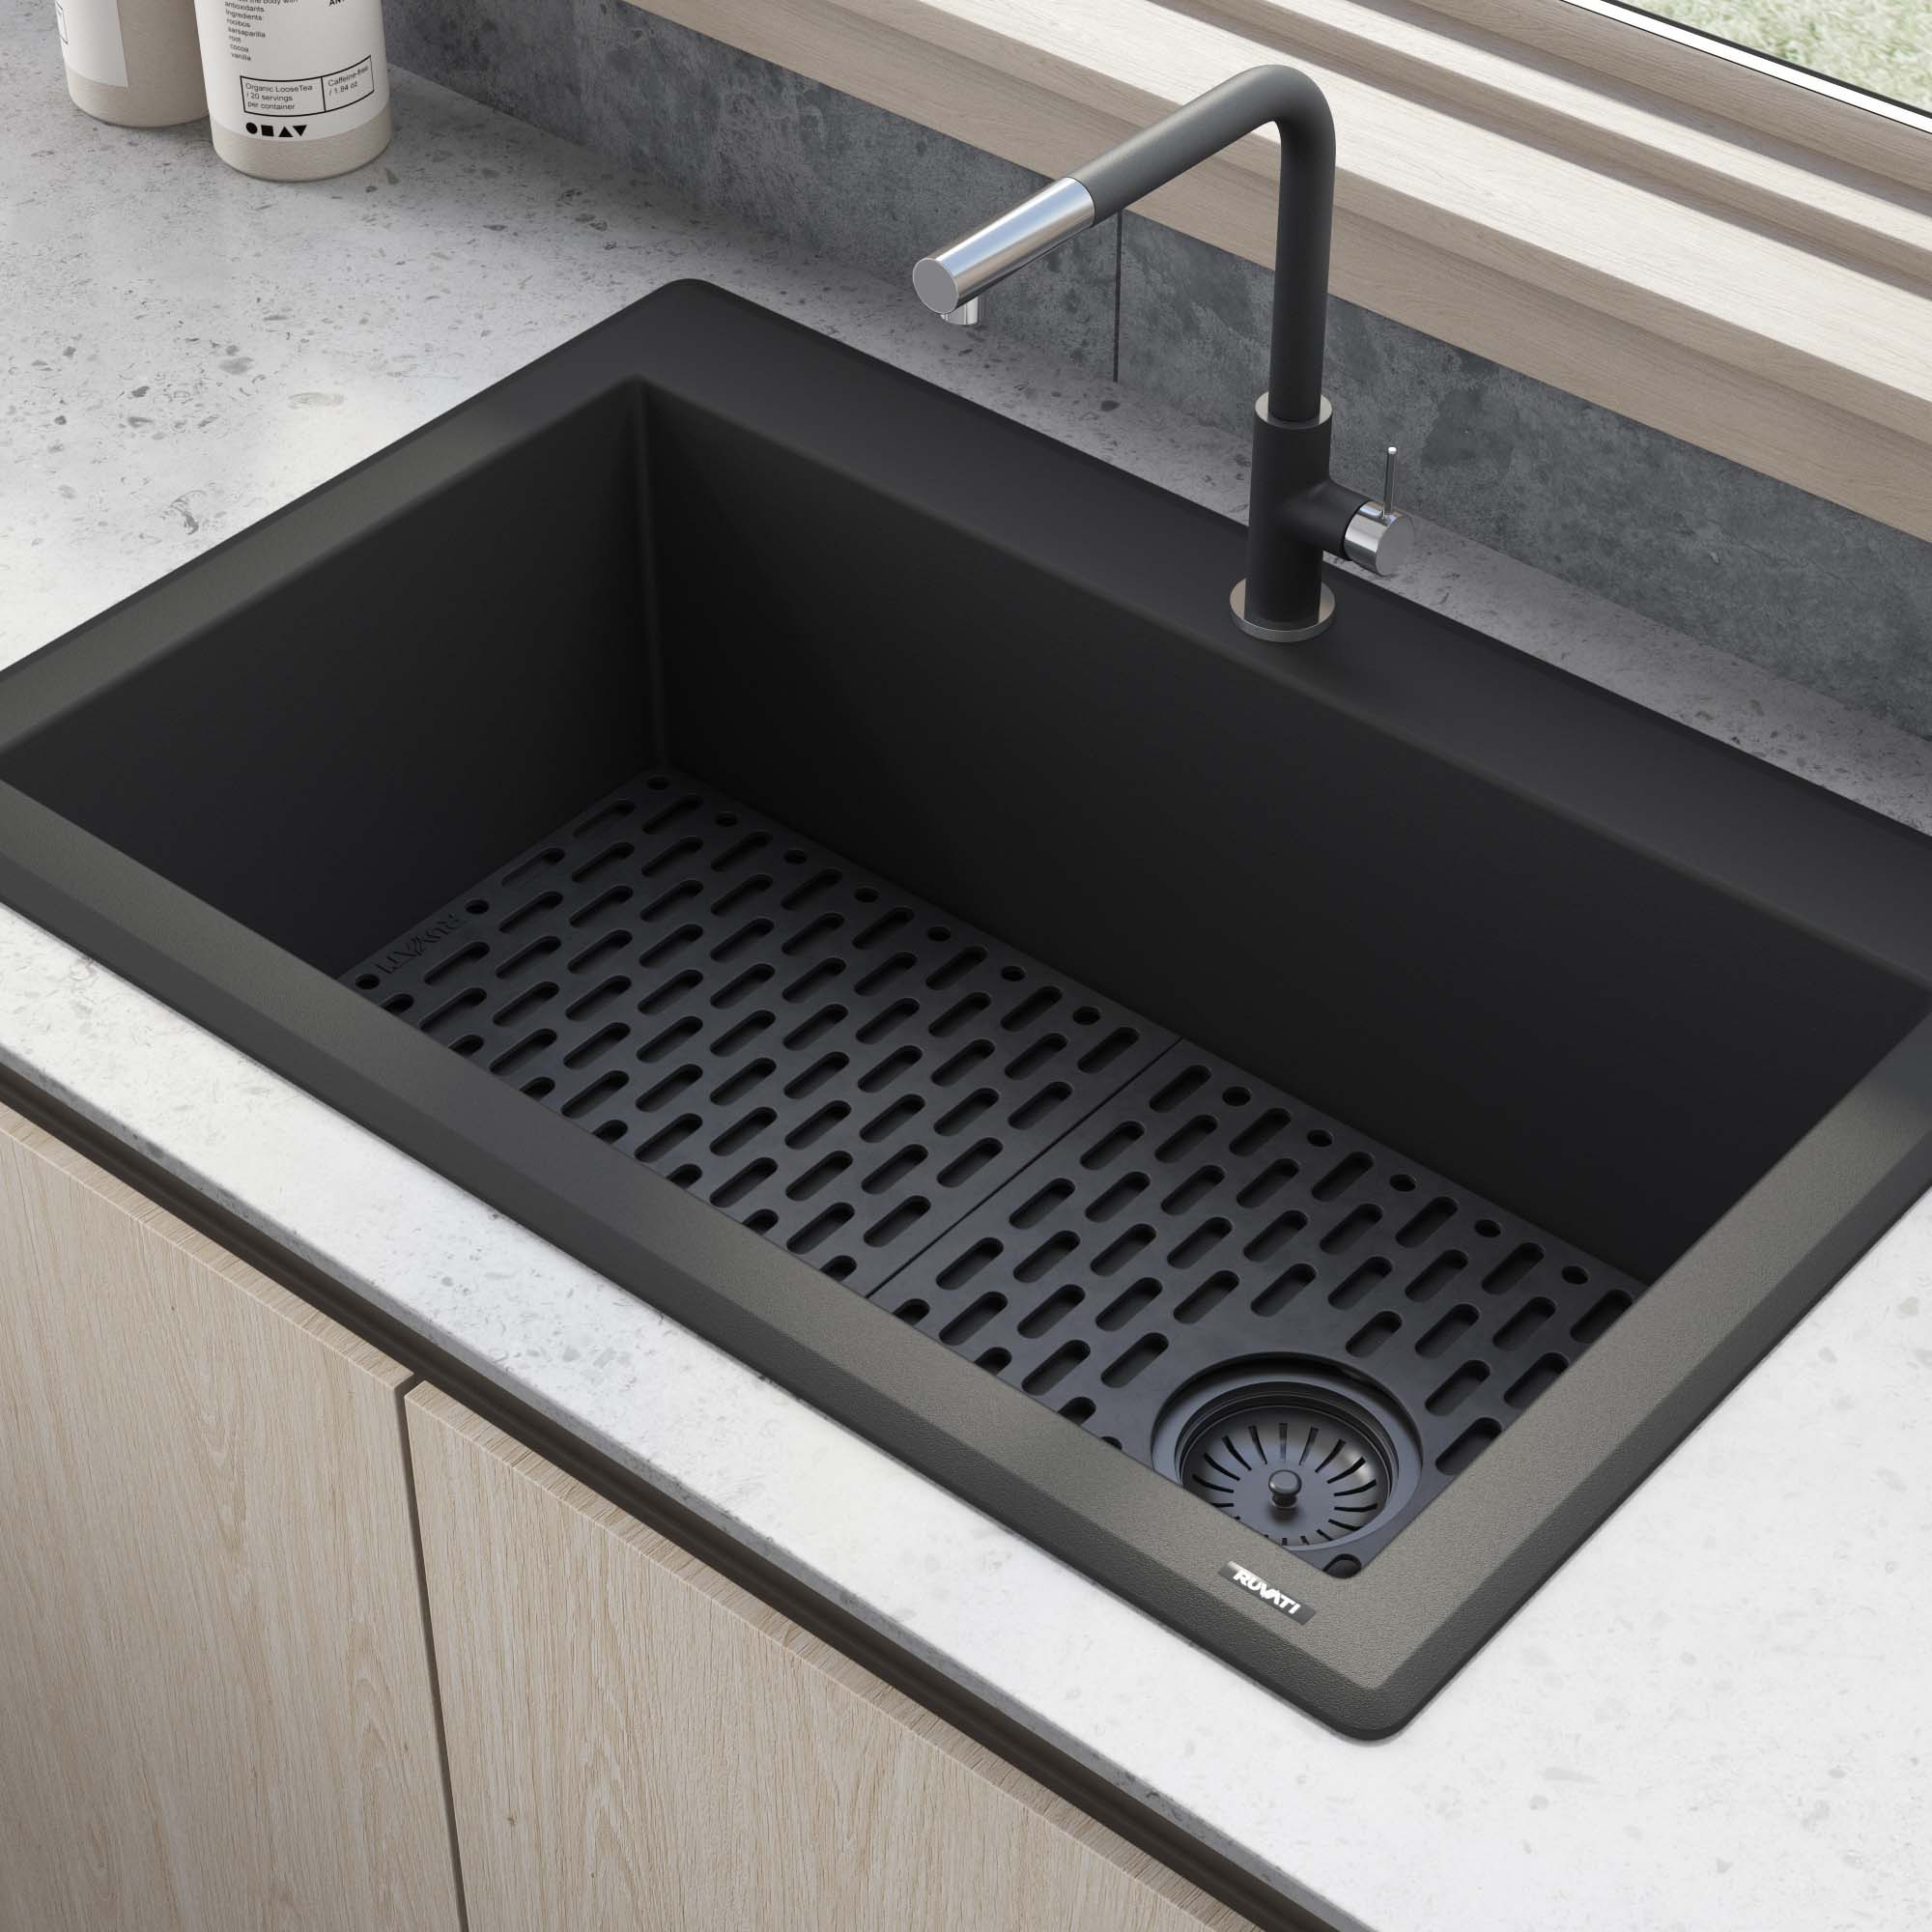 Ruvati 33-inch Undermount Workstation Granite Composite Kitchen Sink Matte  Black - RVG2302BK - Ruvati USA